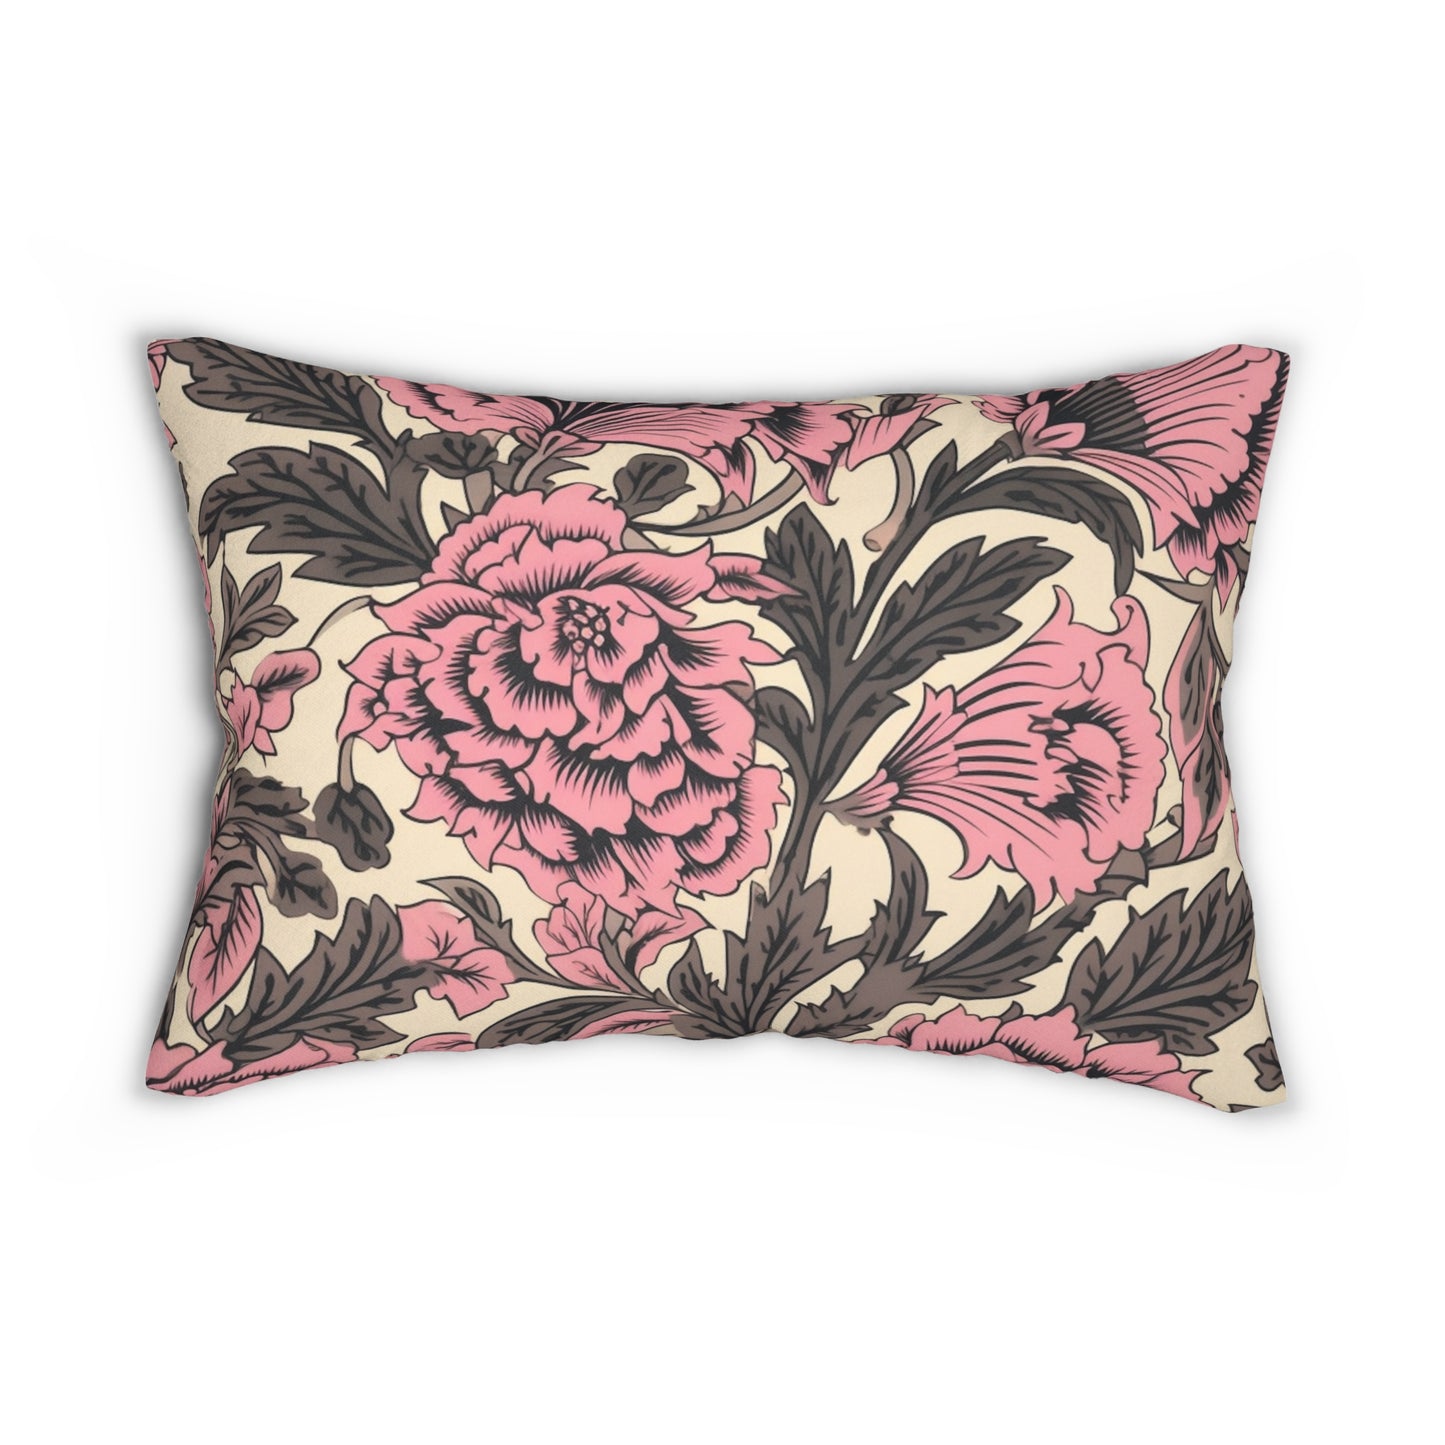 Lumbar Pillow With Pillow Insert In Pink Jacobean Pattern 20"x14"